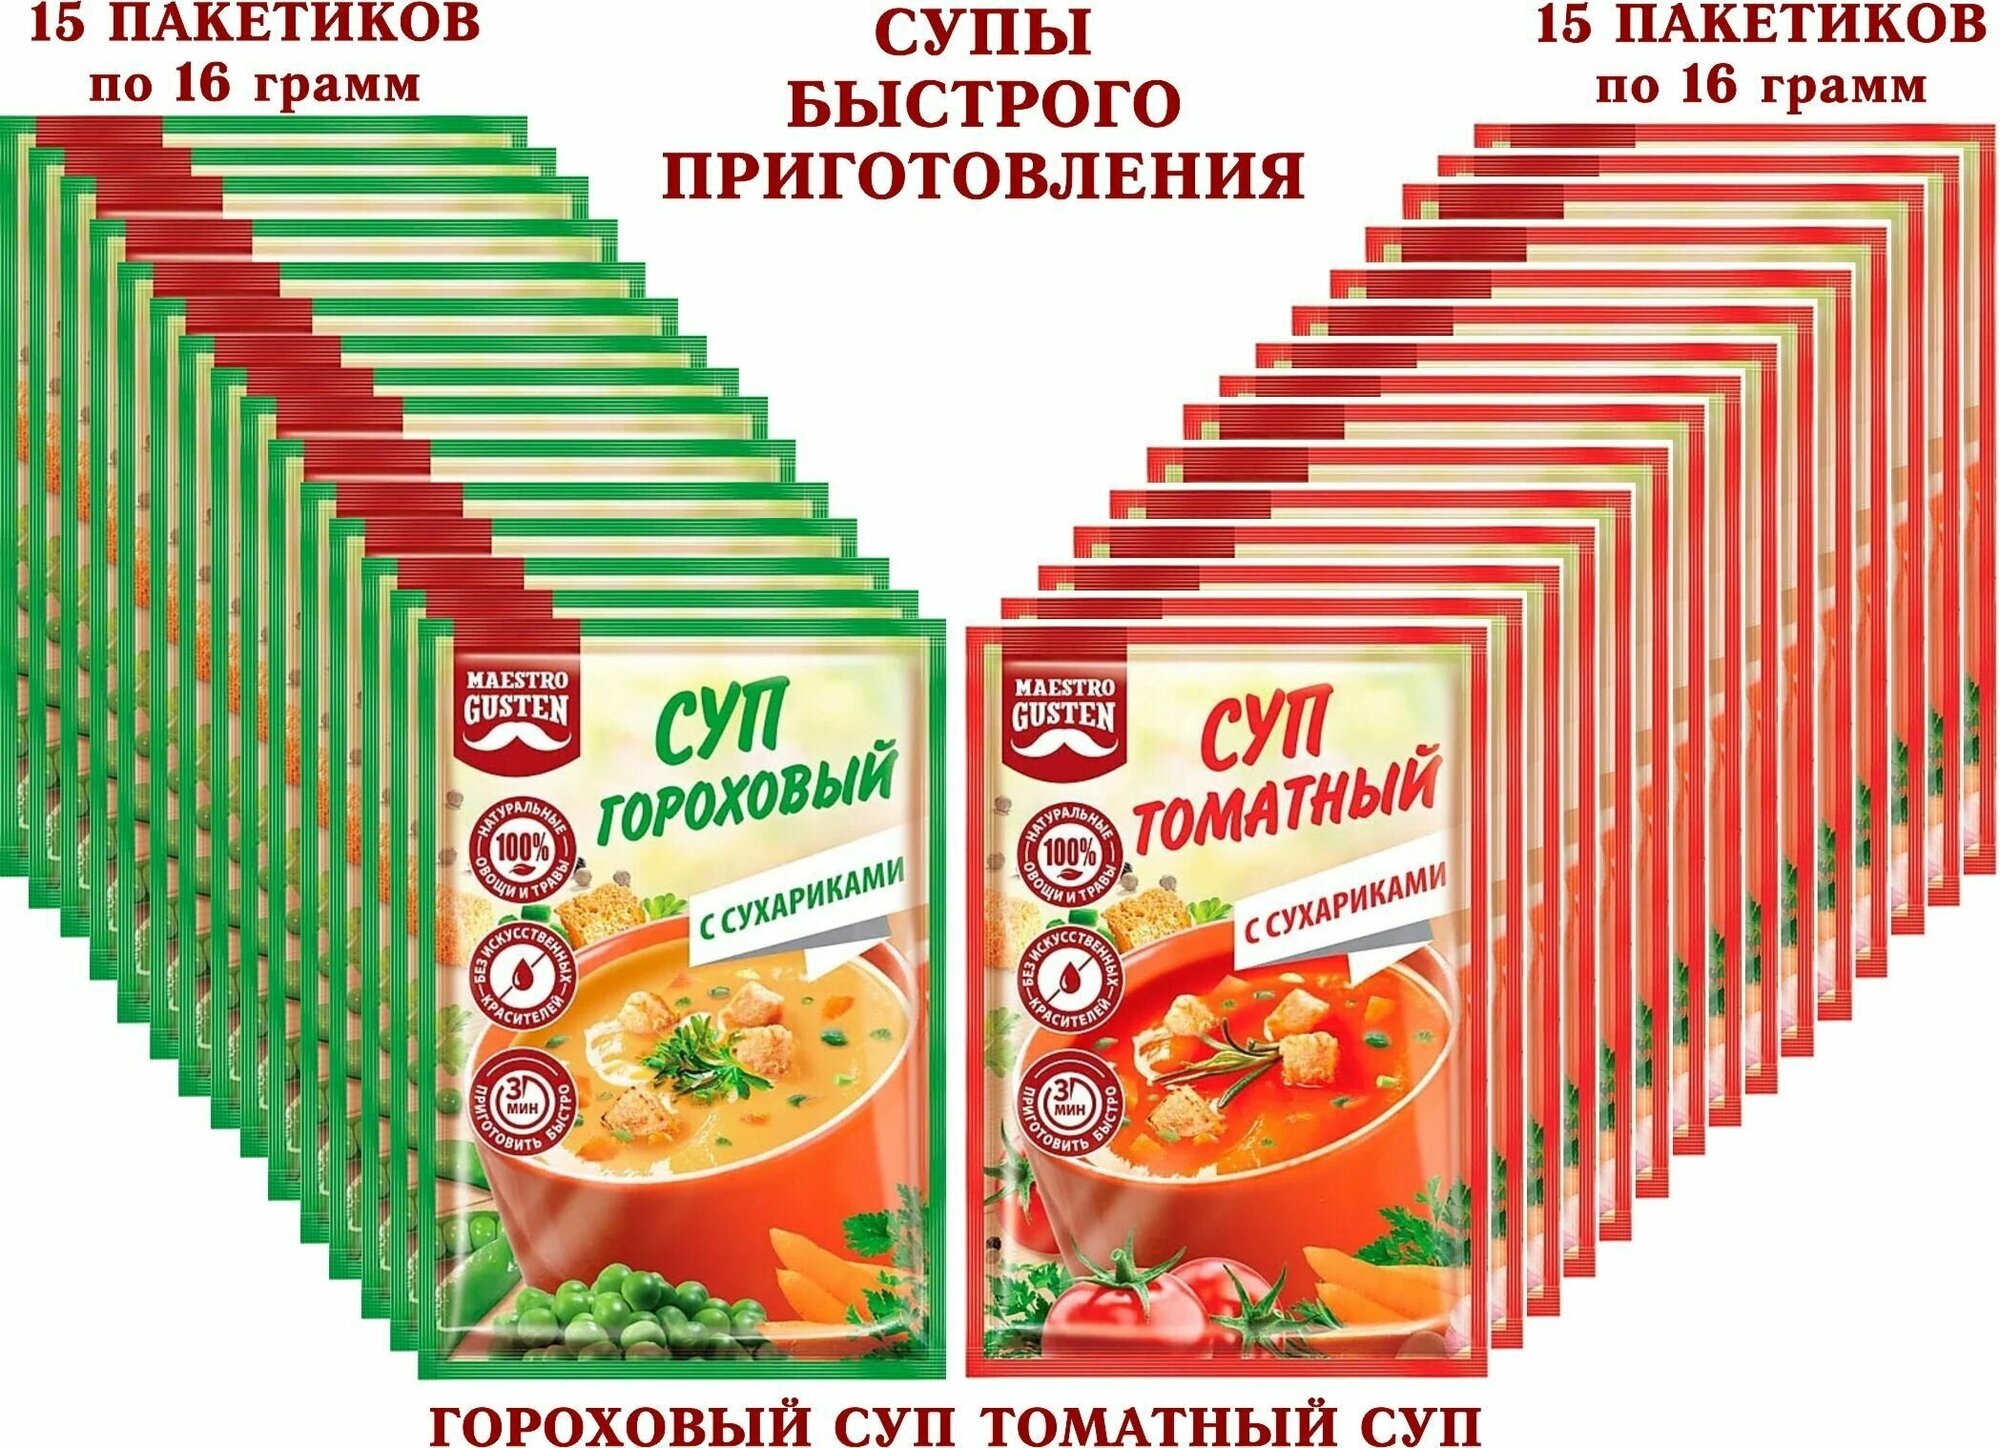 Суп быстрого приготовления "Maestro Gusten" микс гороховый с сухариками/томатный с сухариками, KDV - 30 пакетиков по 16 грамм